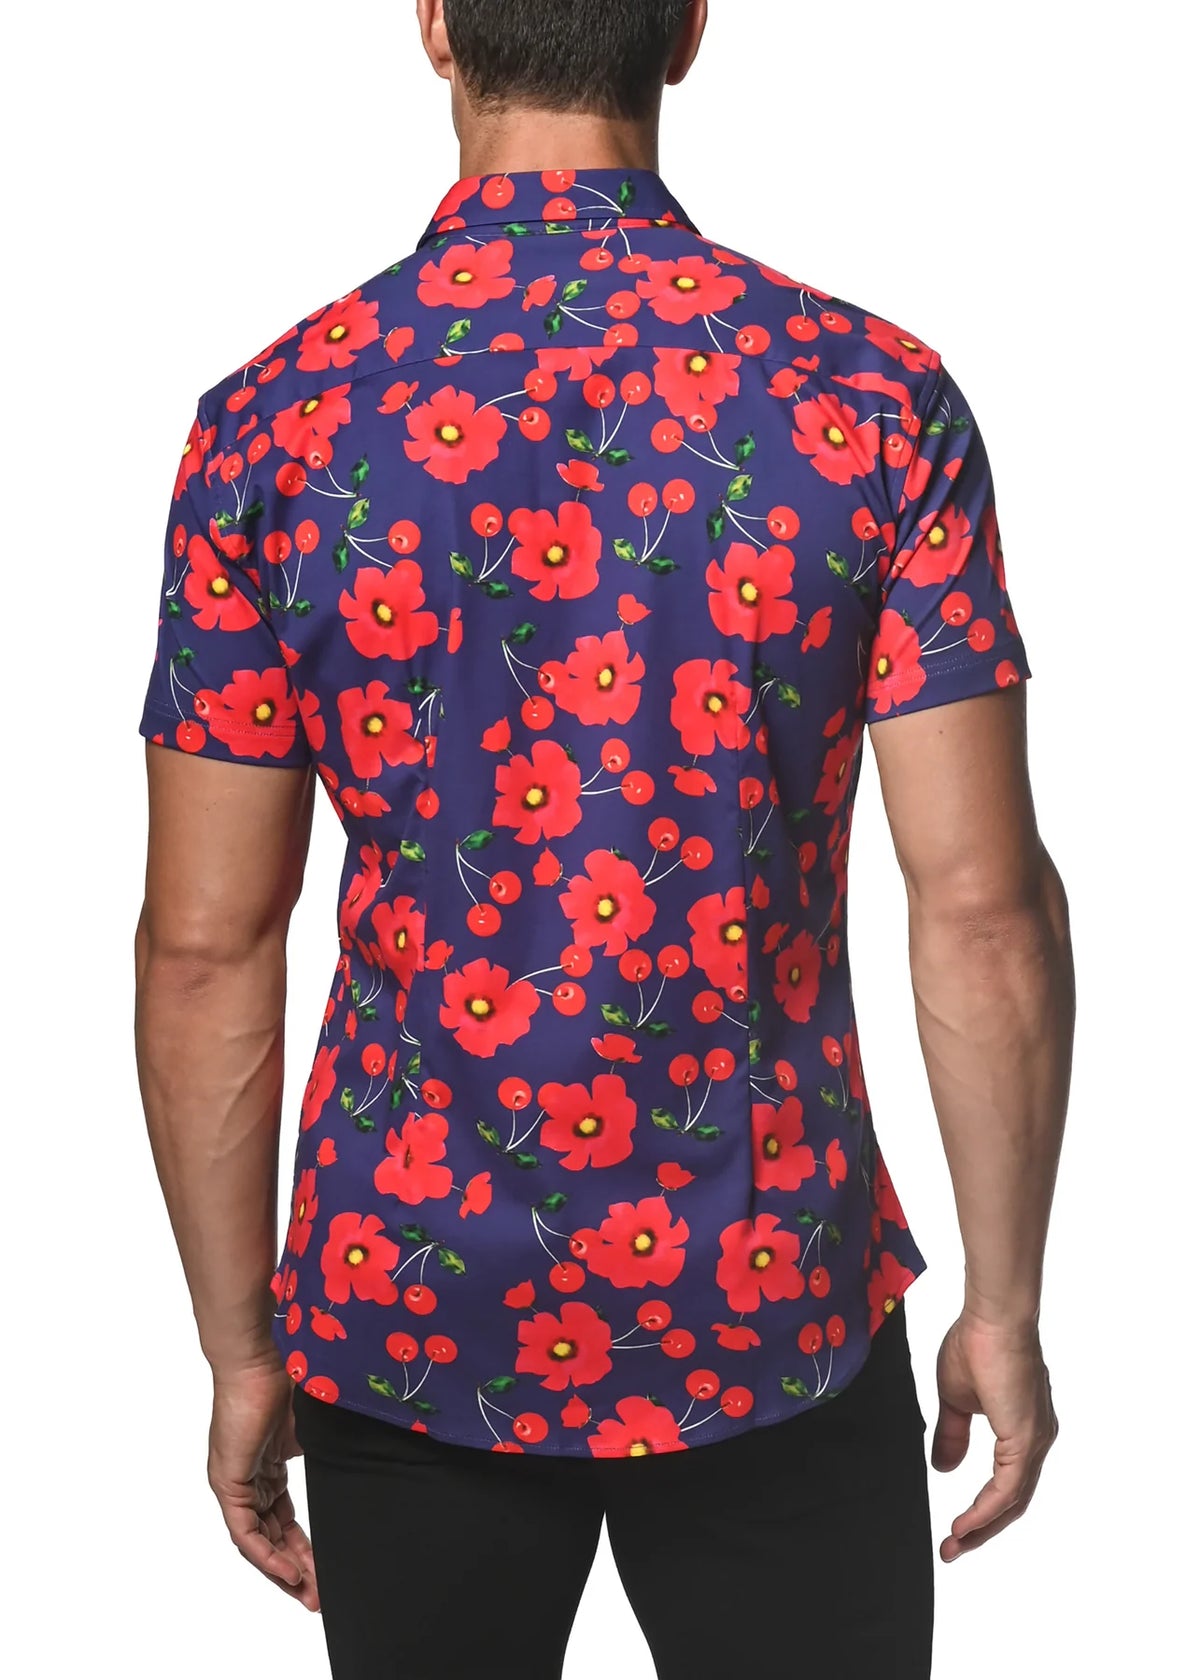 Stretch Jersey Knit Shirt (Navy Poppy Cherries)